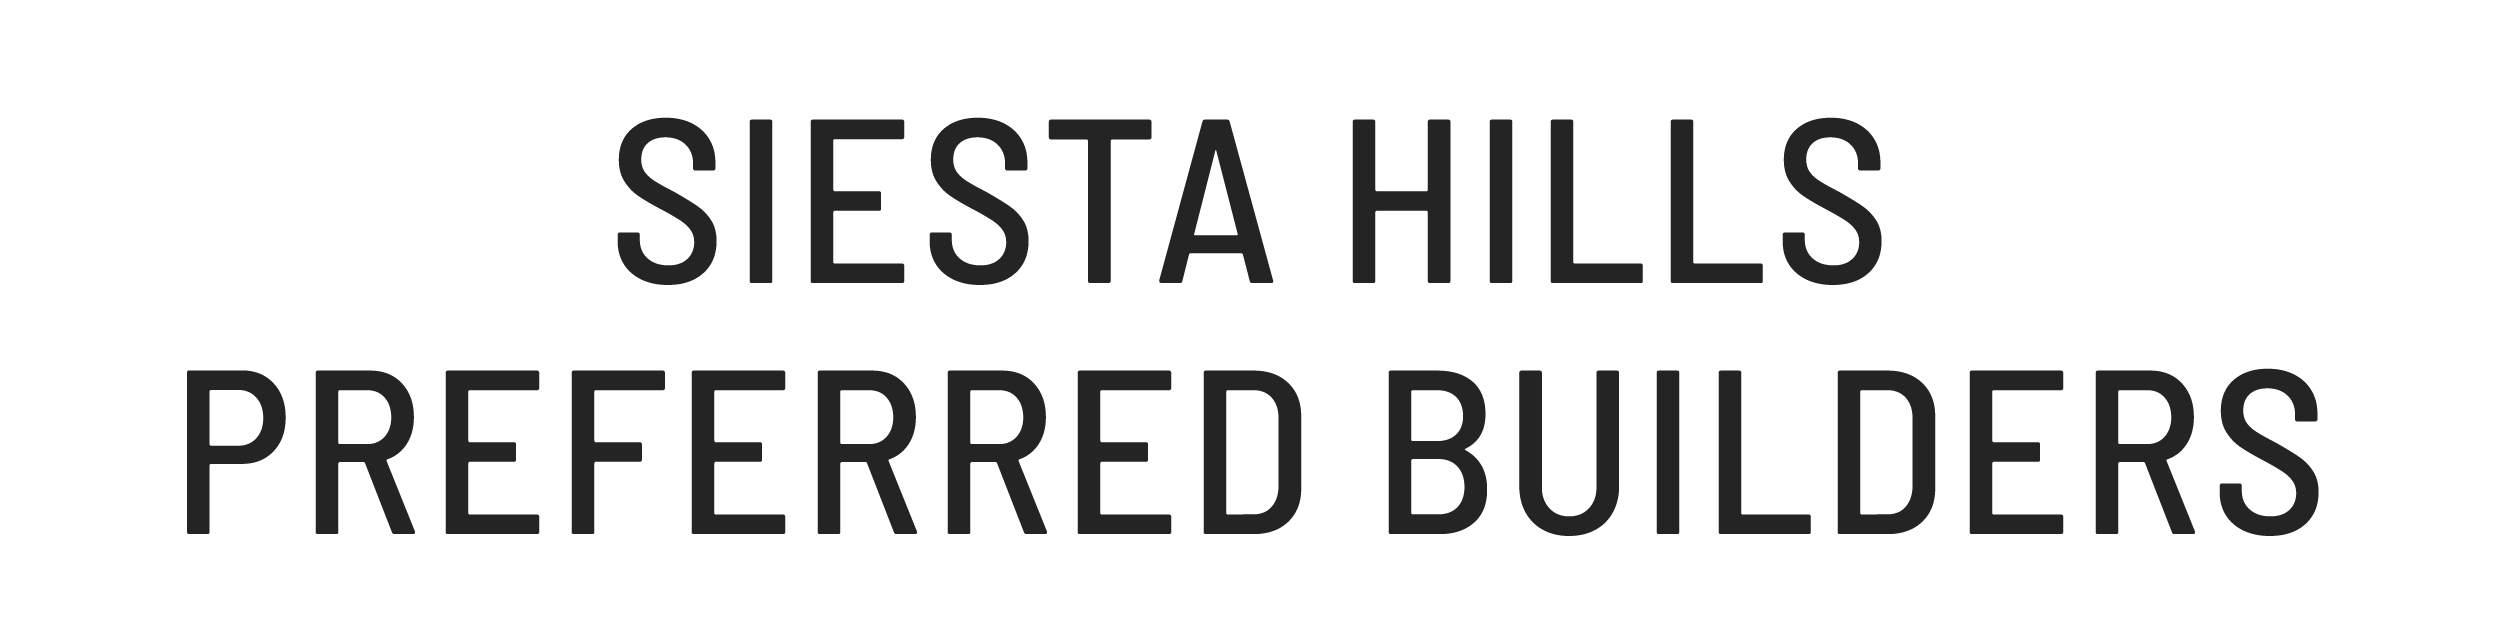 Siesta Hills Preferred Builders